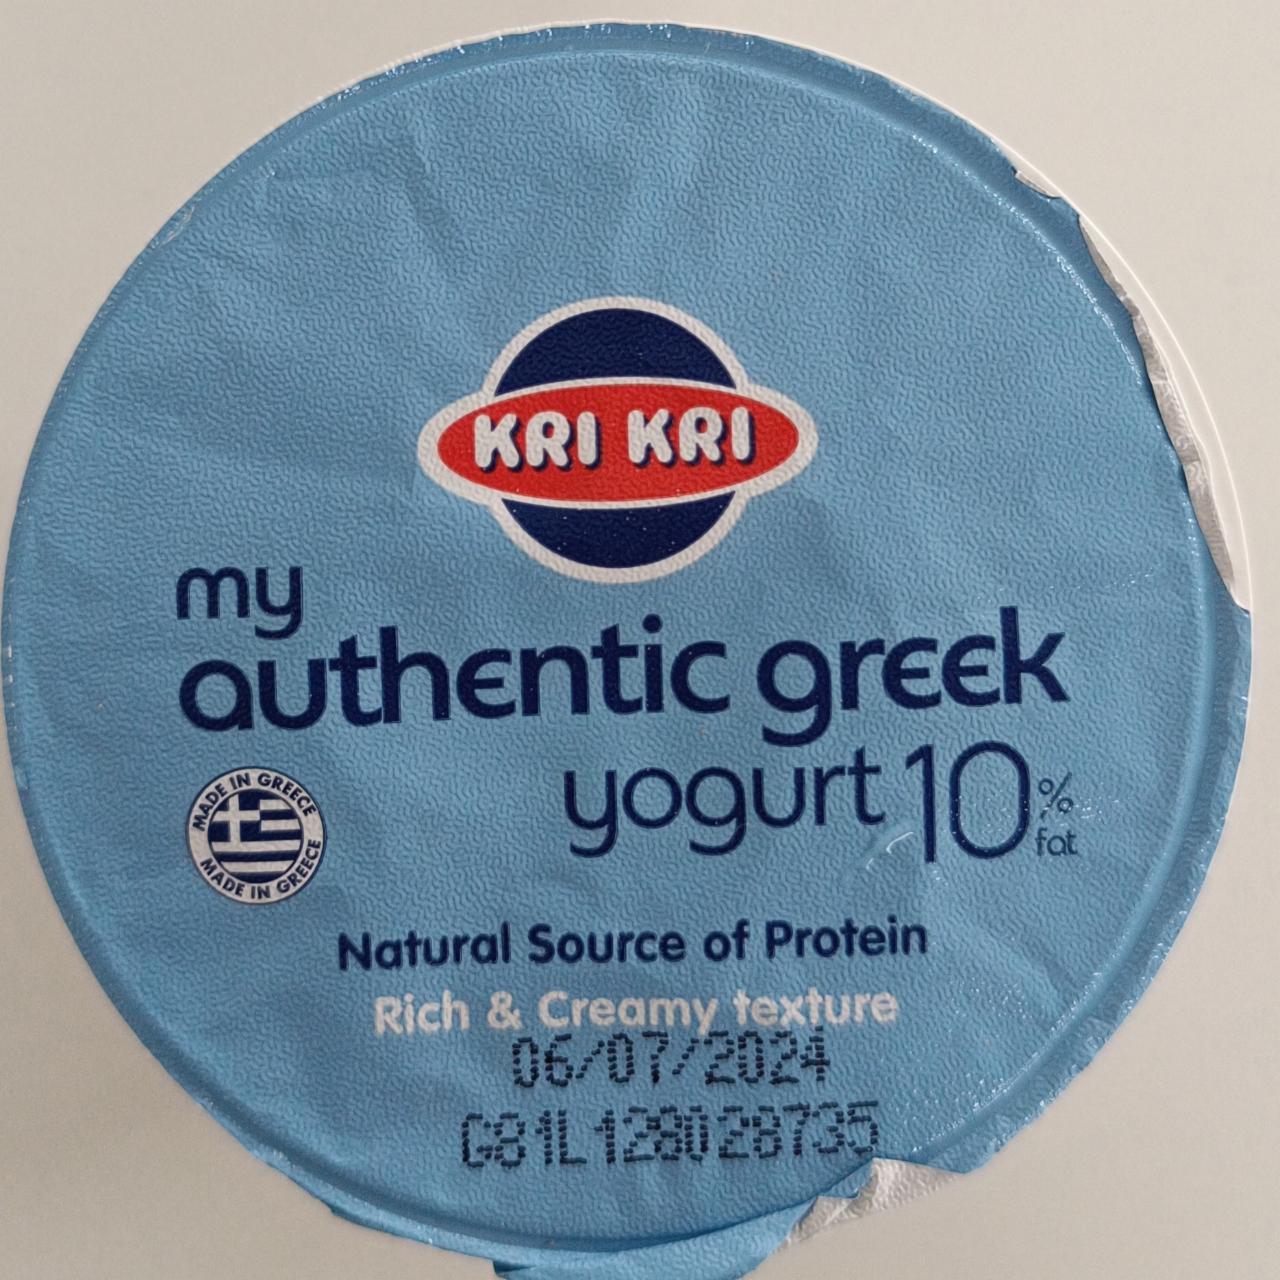 Fotografie - My authentic greek yogurt 10% Kri Kri